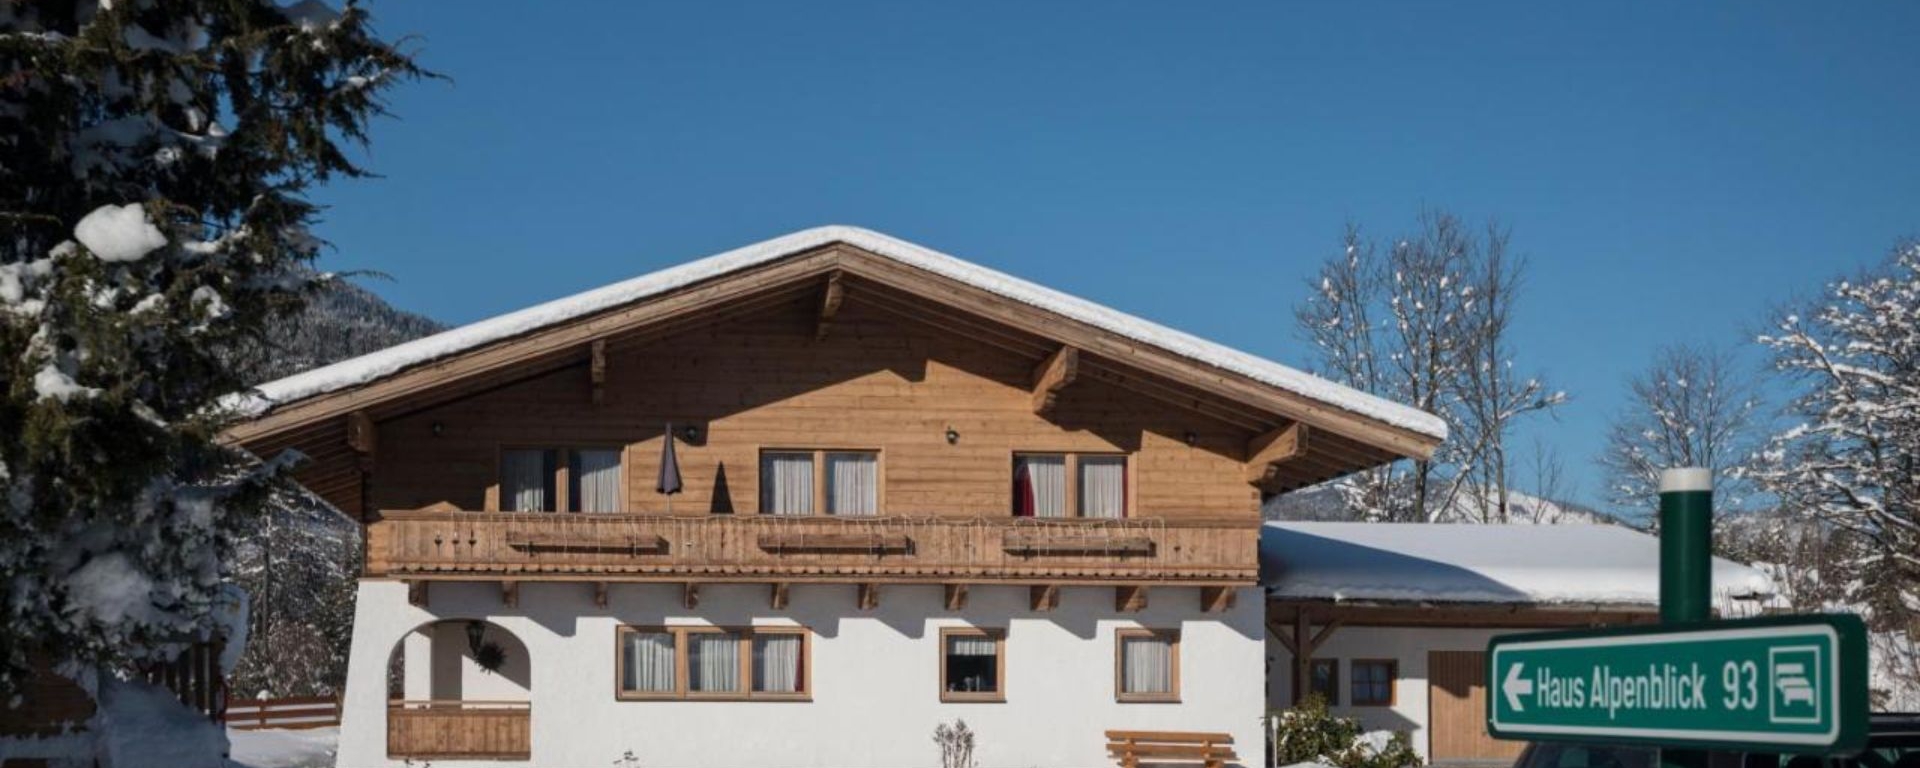 Haus Alpenblick Lejligheder